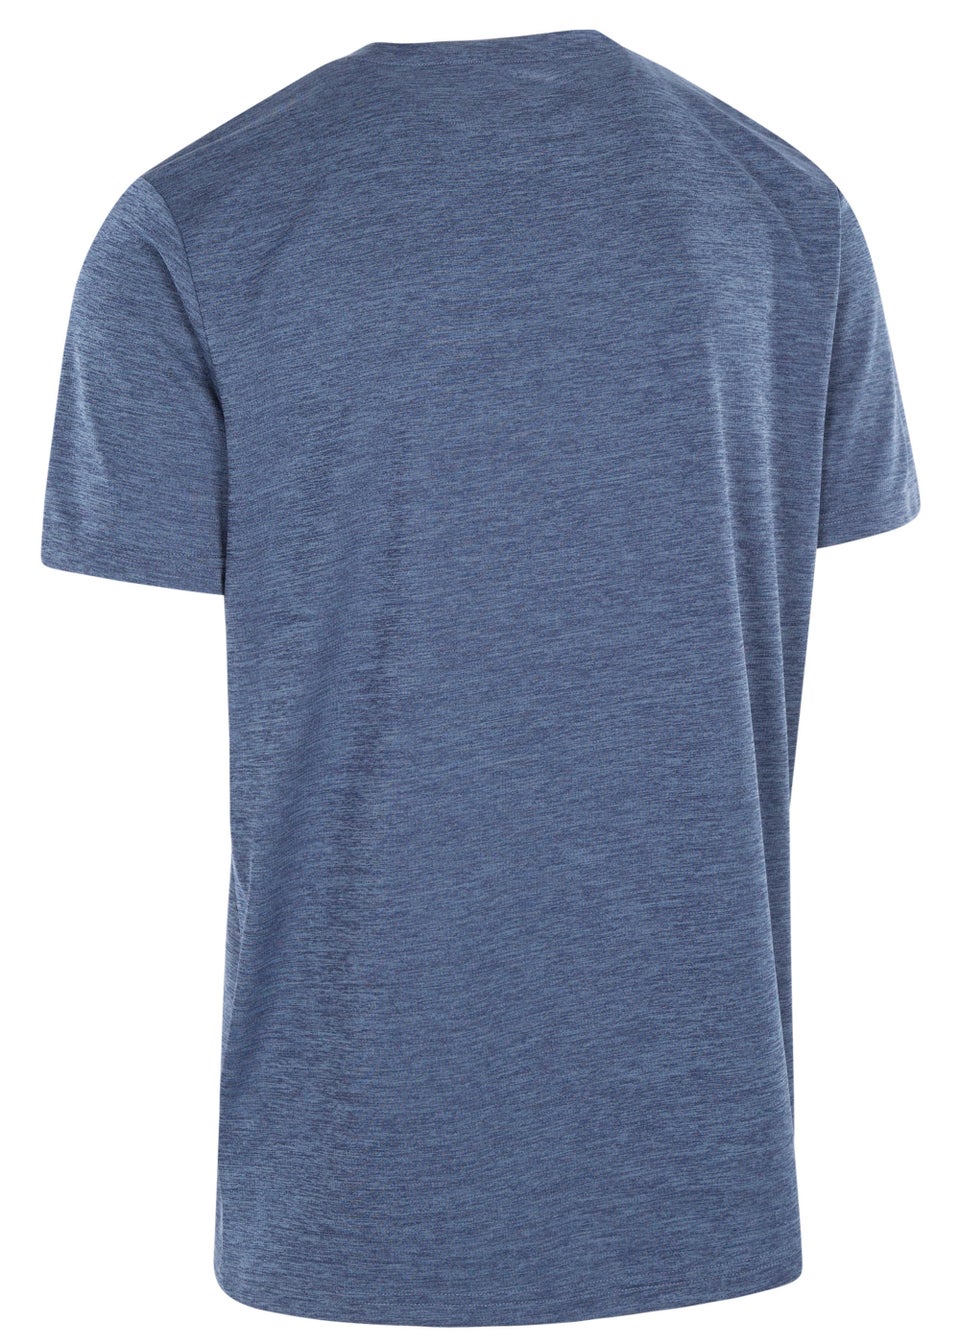 Trespass Raeran Blue Technical T-Shirt - Matalan